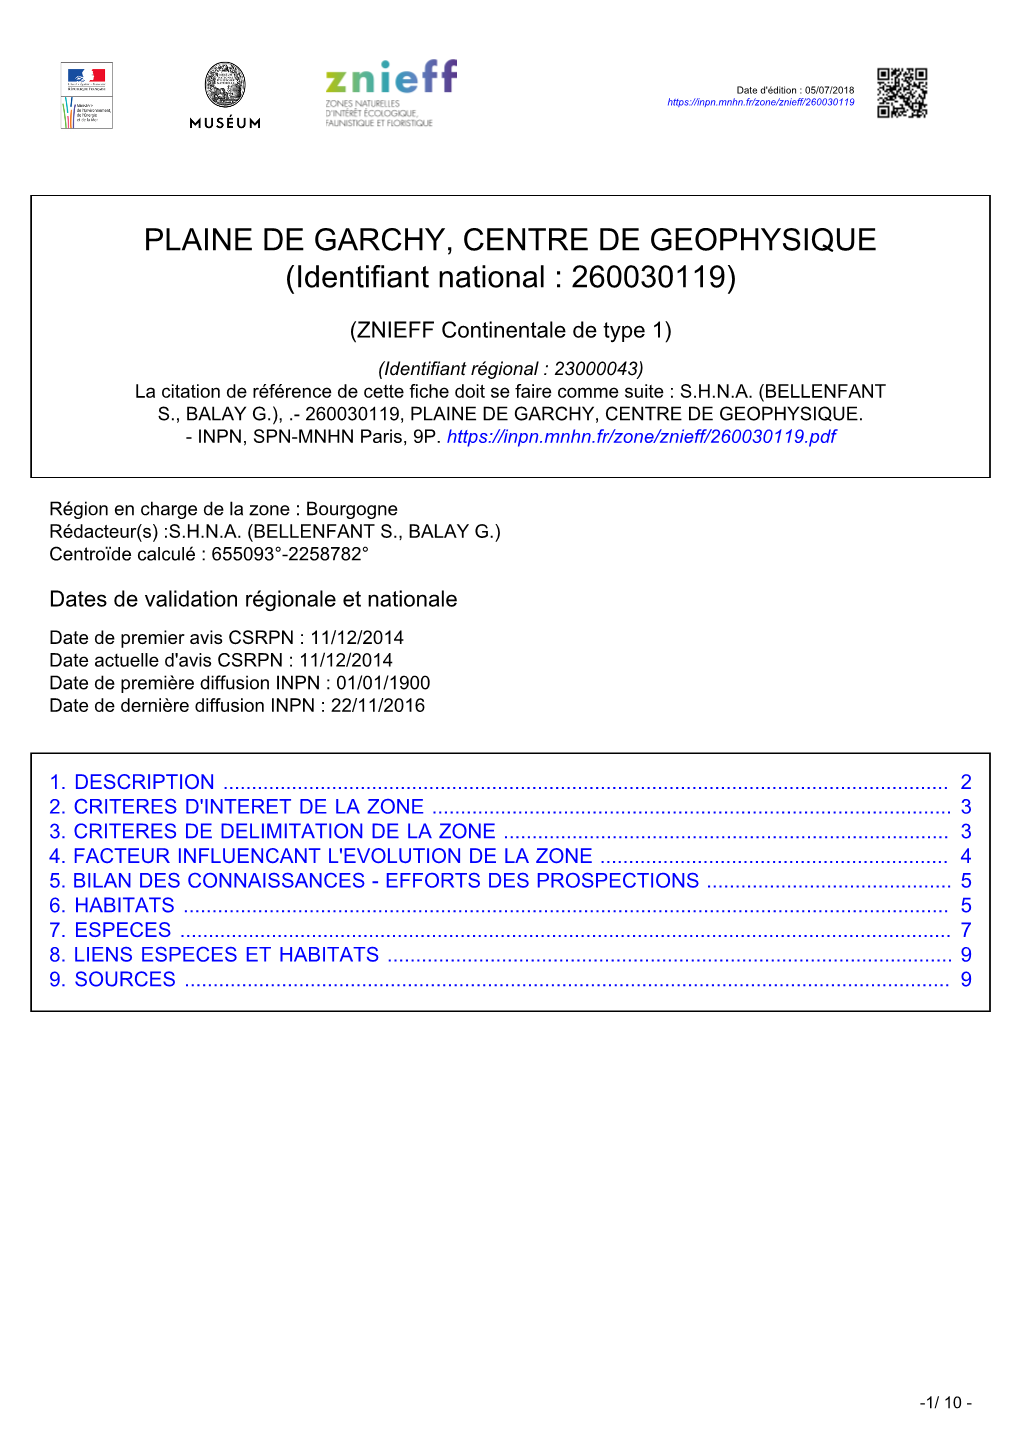 PLAINE DE GARCHY, CENTRE DE GEOPHYSIQUE (Identifiant National : 260030119)